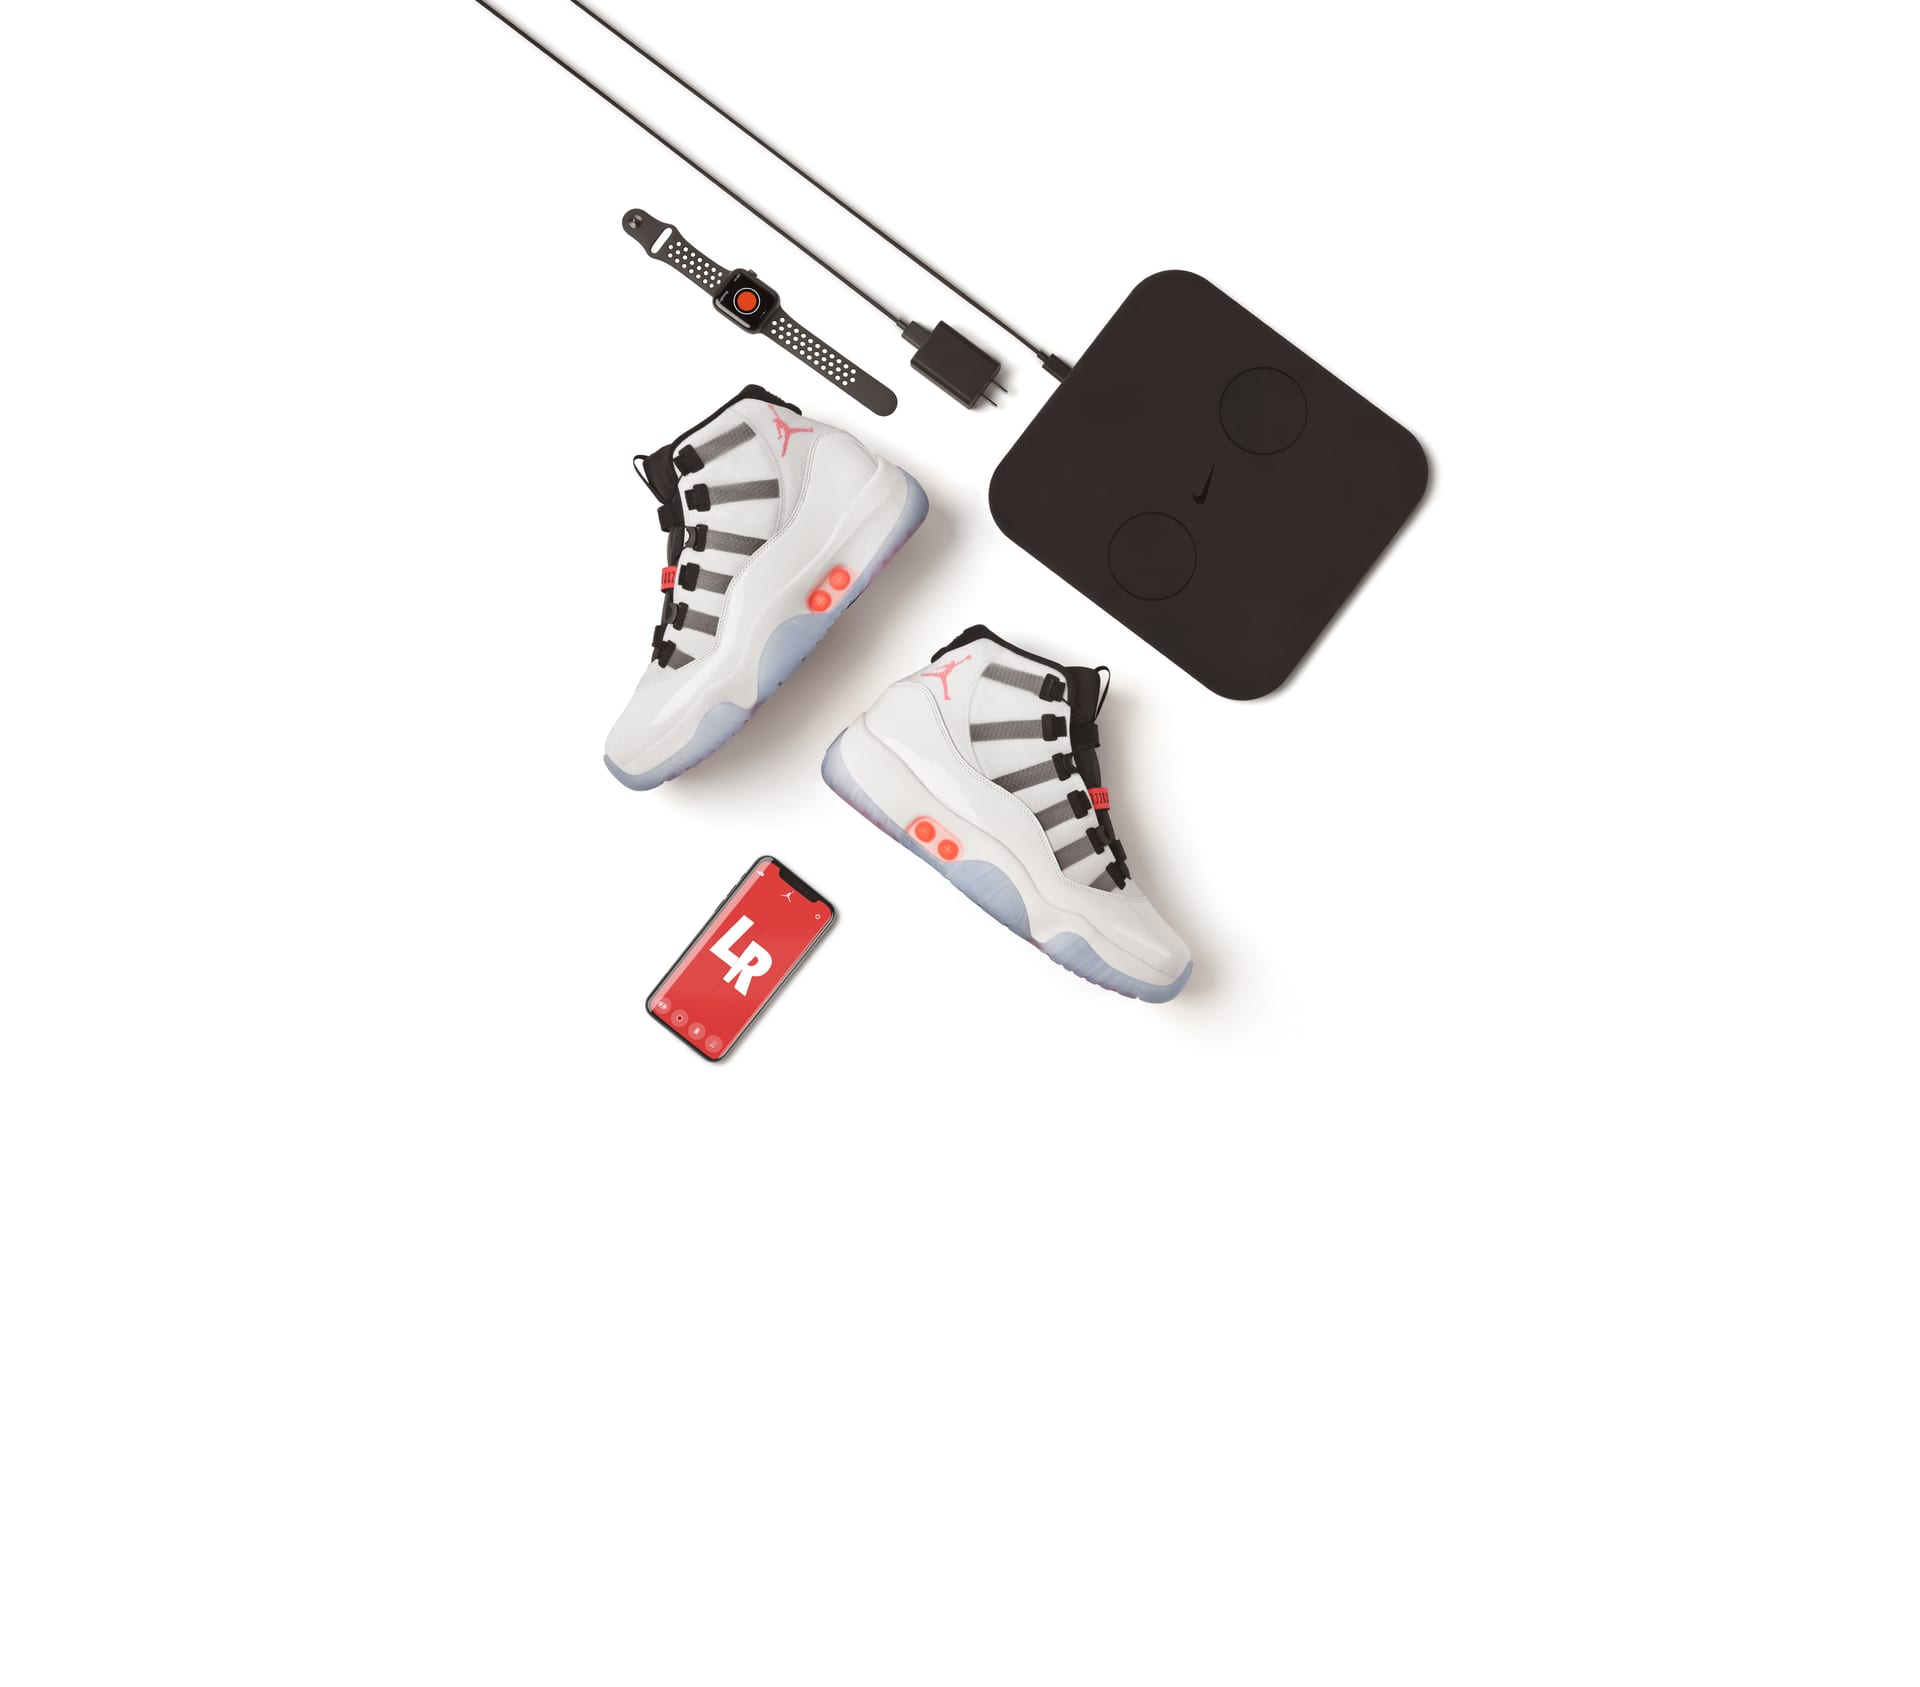 Cómo cargo calzado Nike Adapt? | Ayuda de Nike